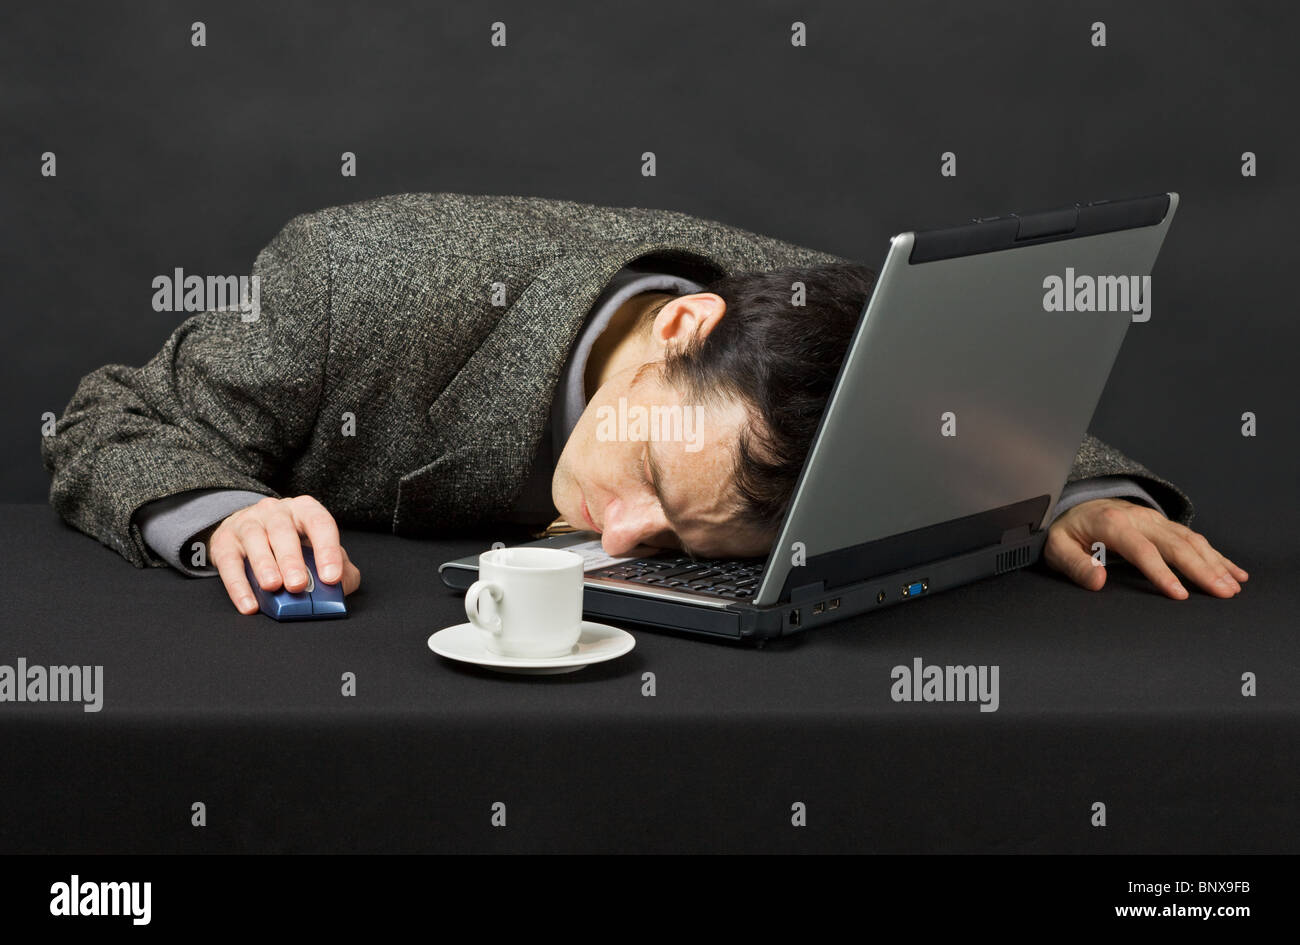 Le gars a travaillé la nuit dans l'Internet, était fatigué et s'est endormie Banque D'Images